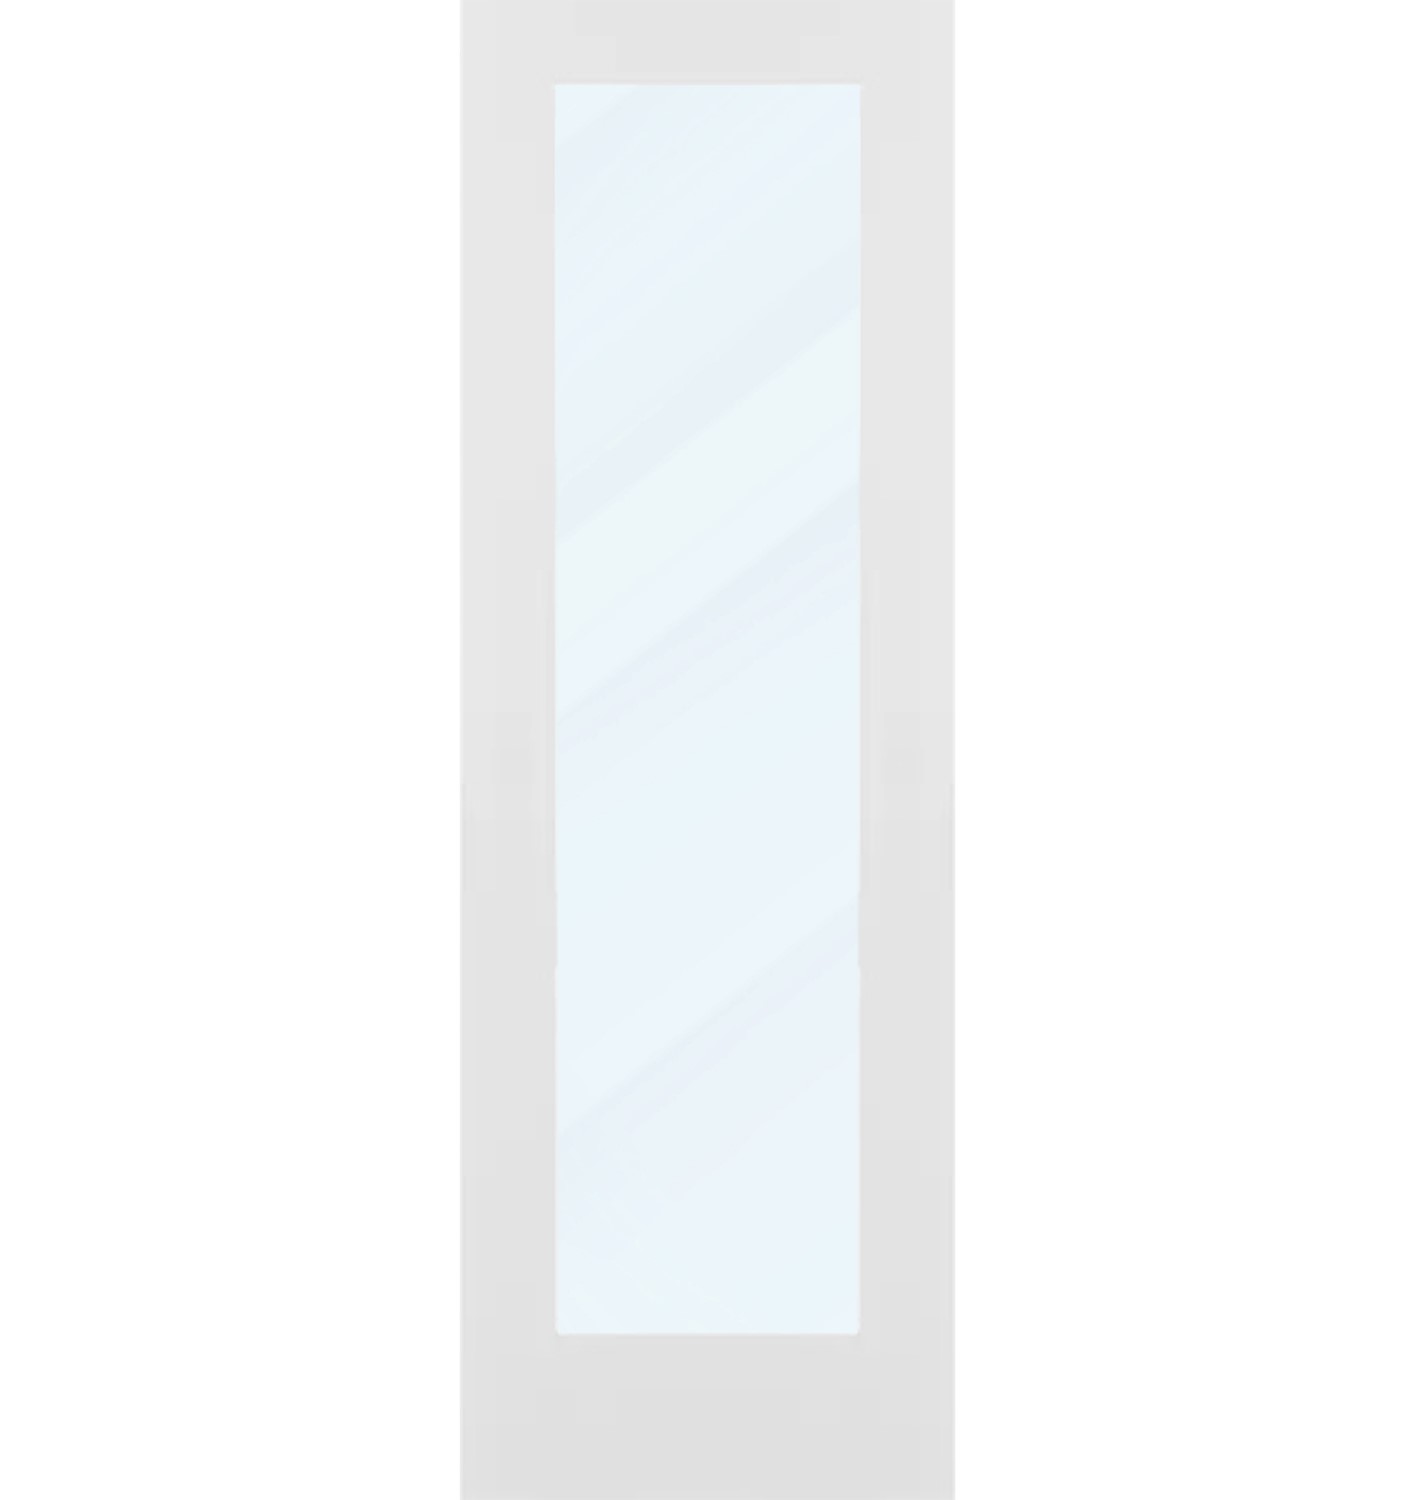 1 Panel Solid Core Door (Clear Glass) - 26 x 80 - D1CG26